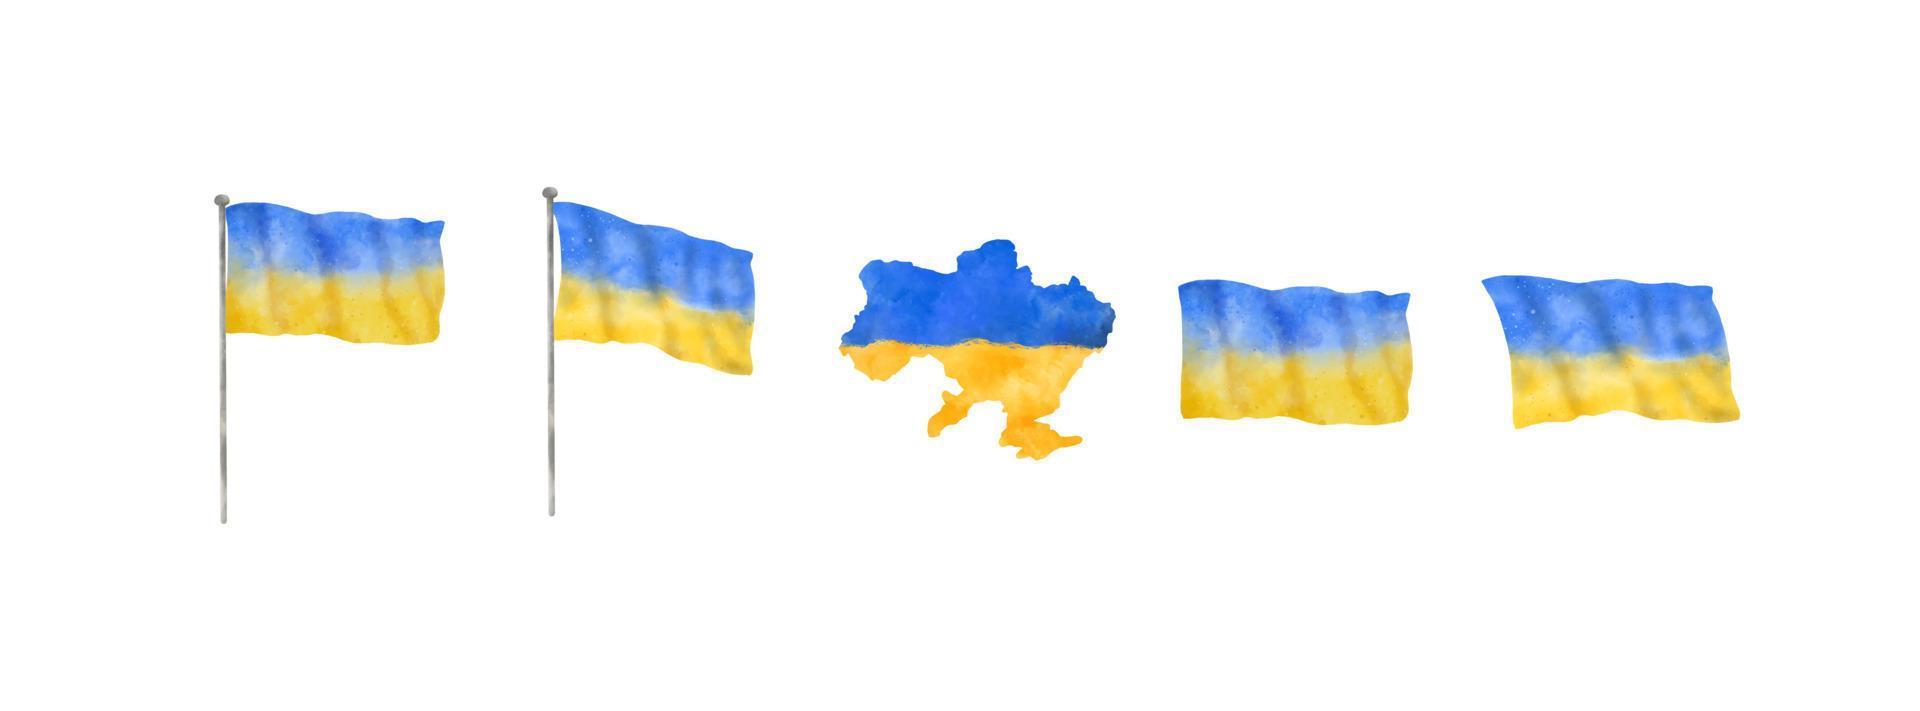 ukrainska flaggan och landet karta i akvarell stil. dekorativa element för ukrainska fredskoncept. vektor illustration